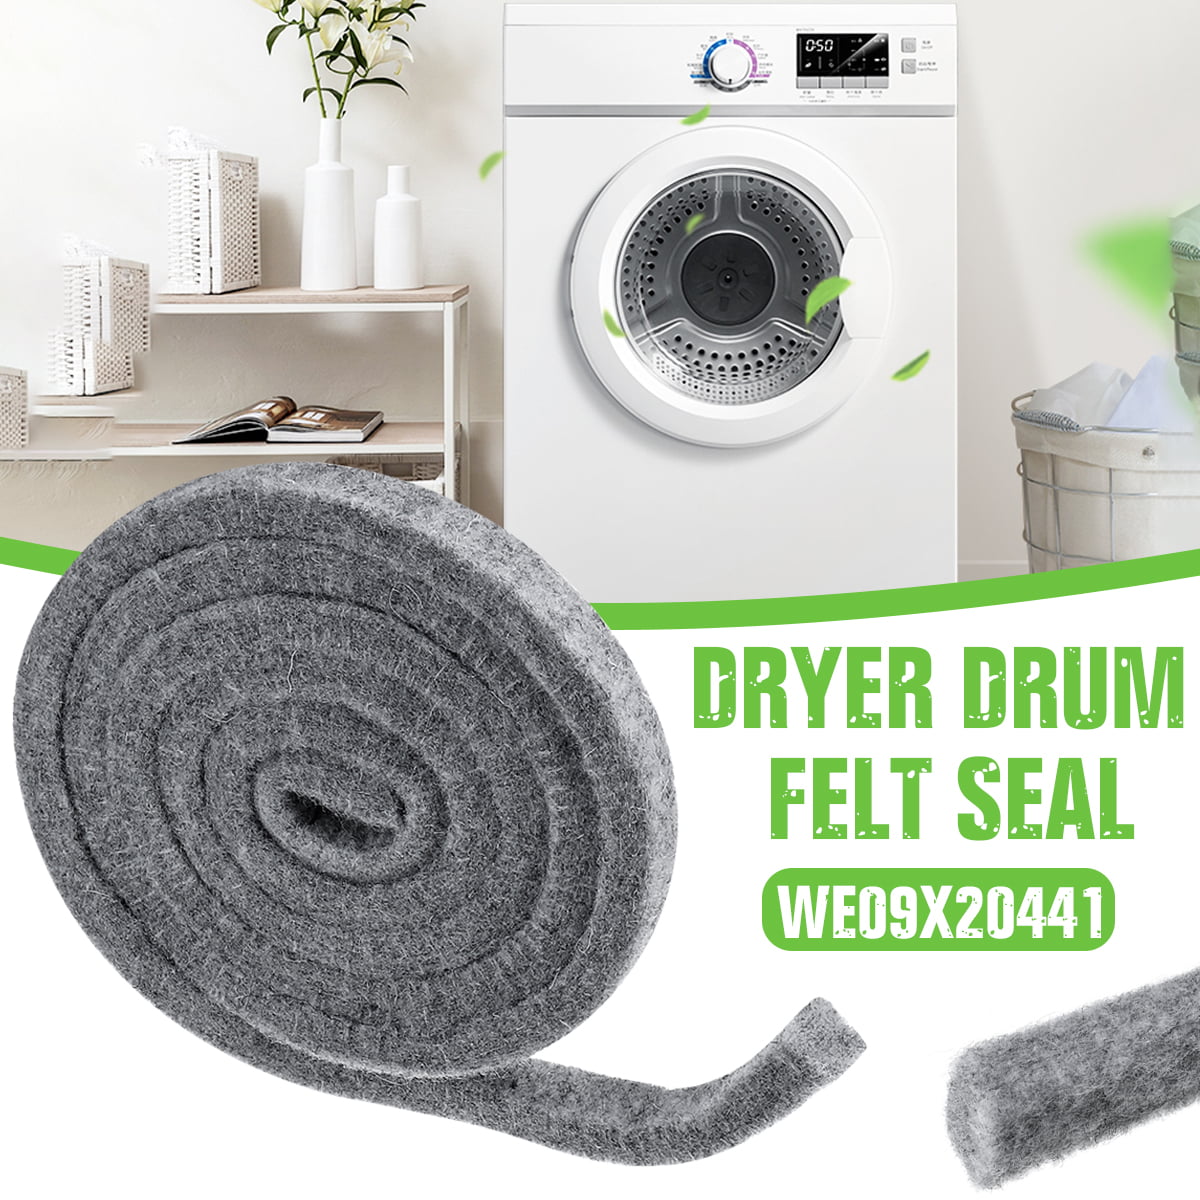 New Genuine OEM GE Dryer Drum Felt Seal WE09X20441 